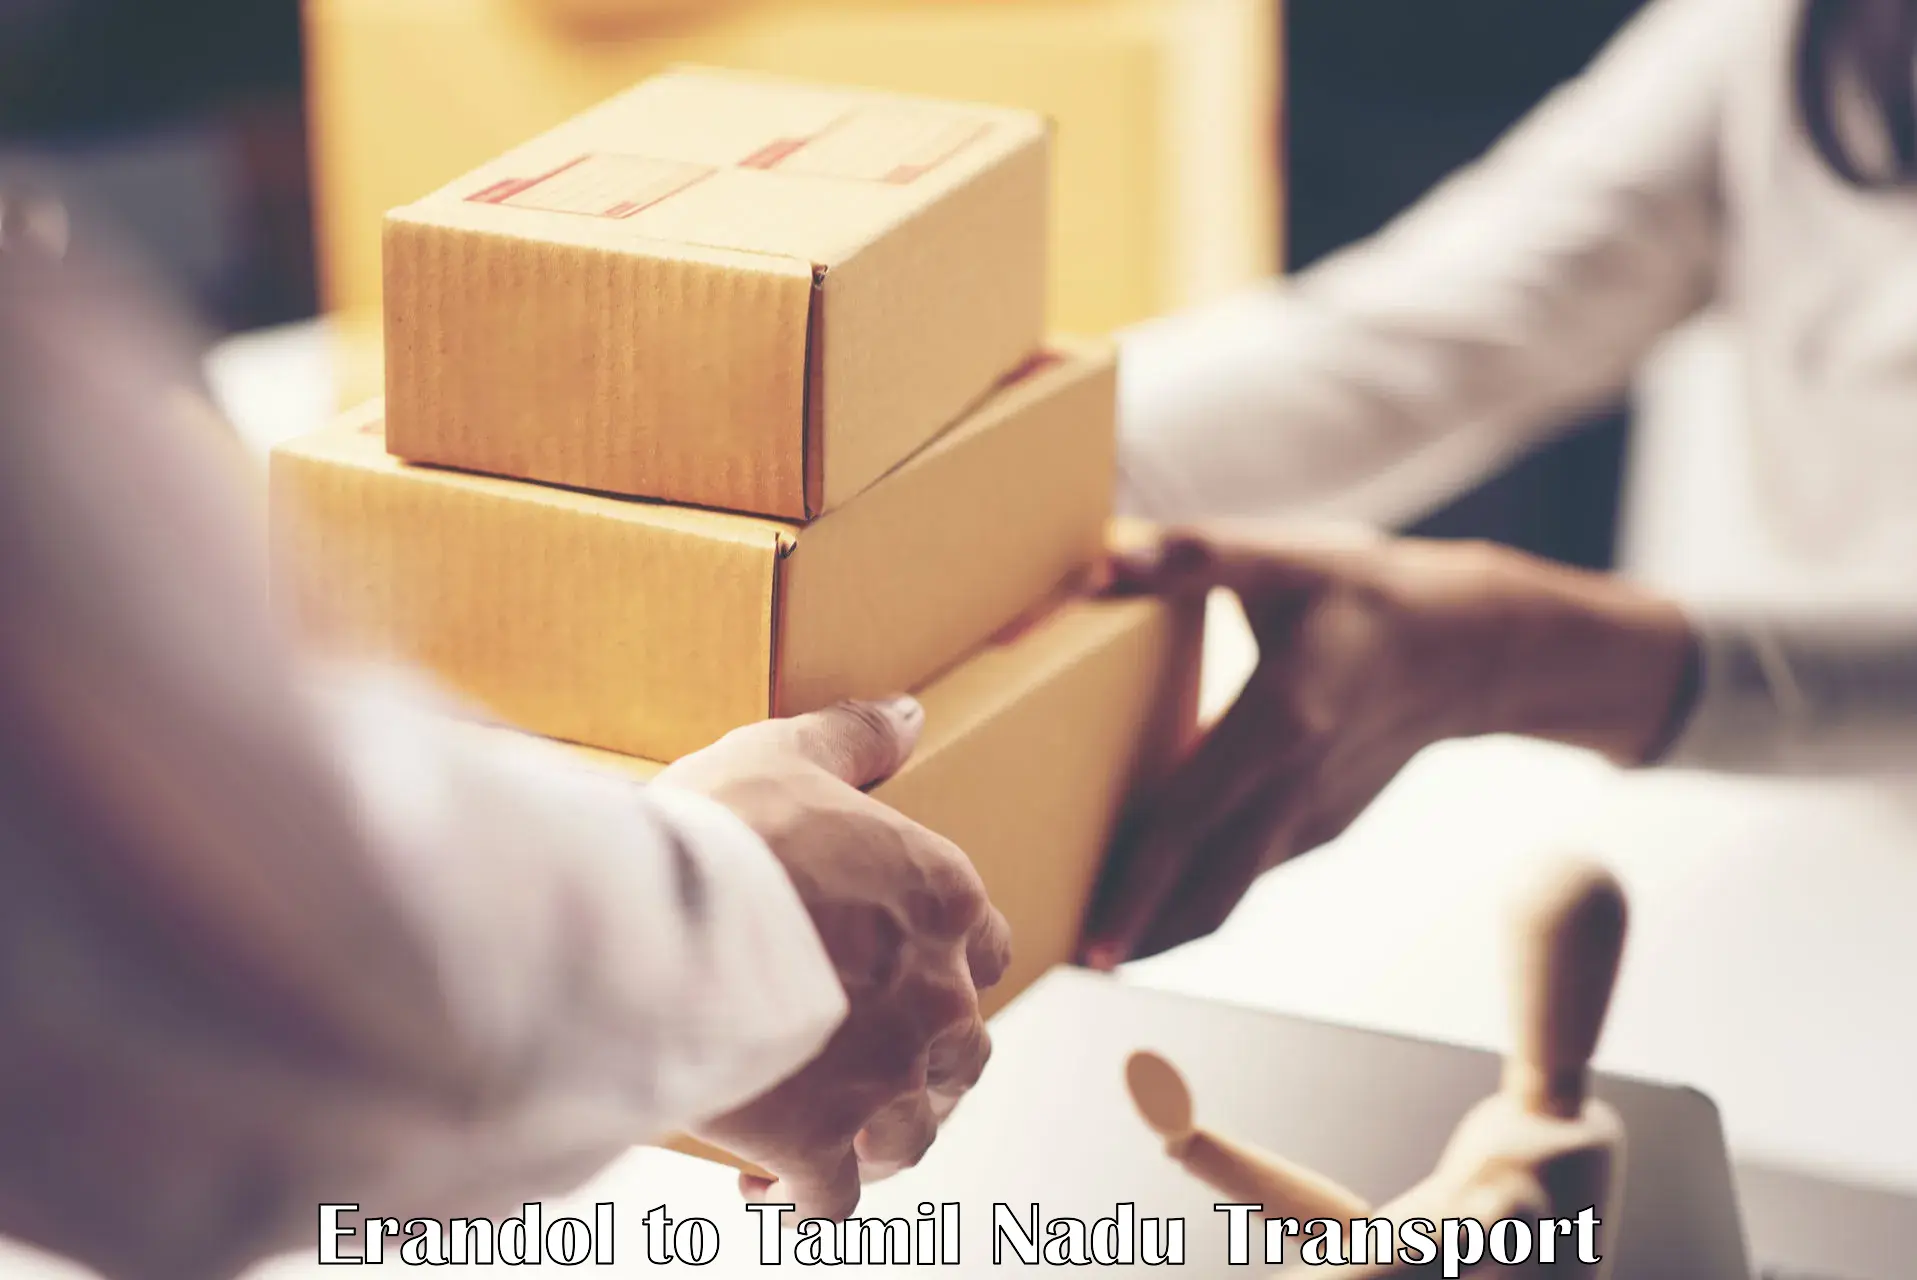 Online transport booking Erandol to Tenkasi